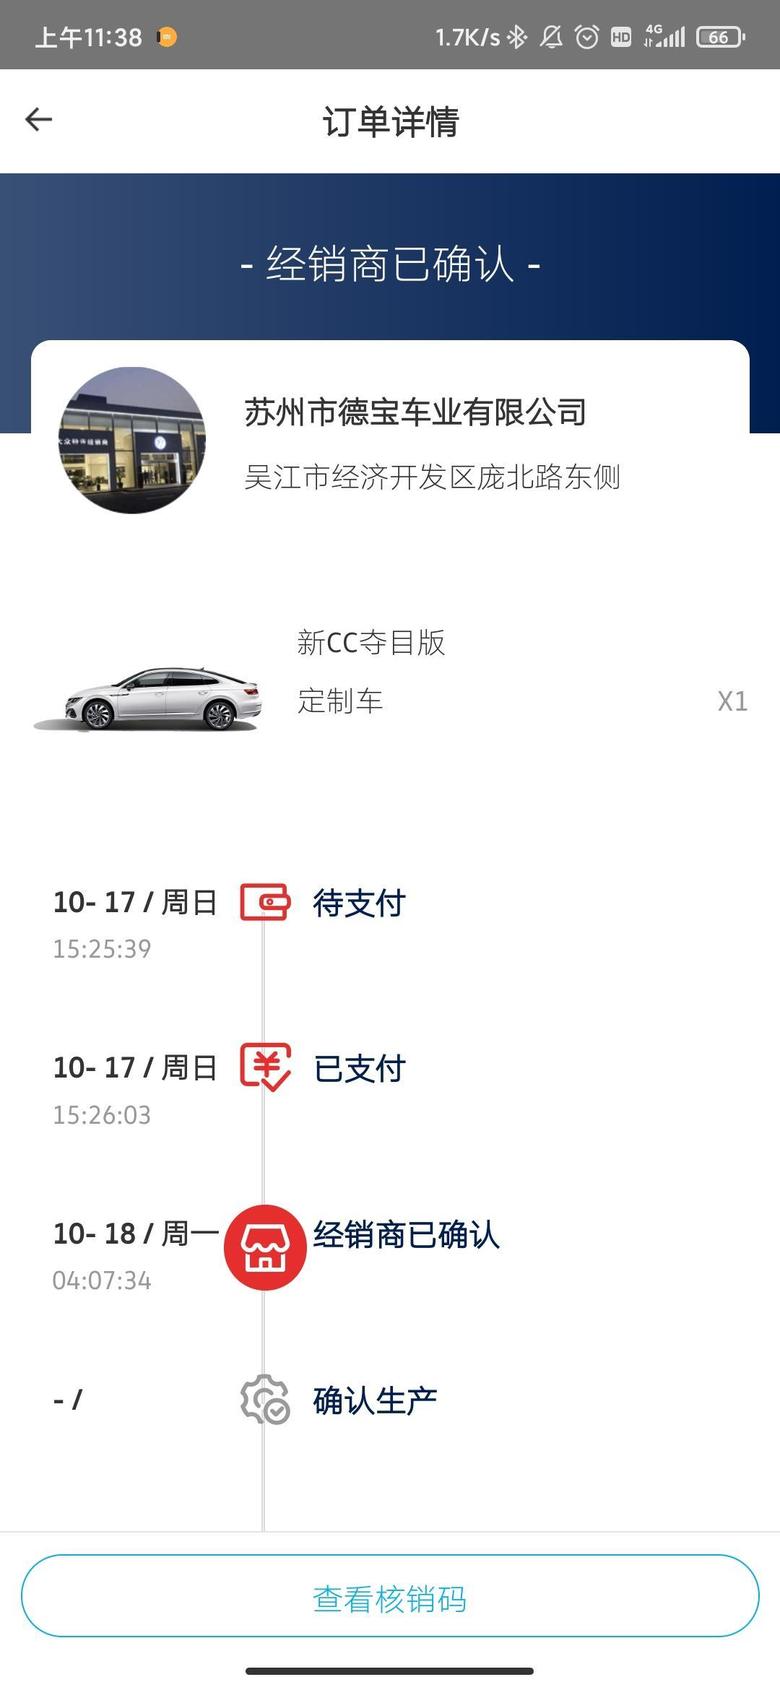 大众cc 销售和我说车已经到上海了检测去了，这个就能提啦